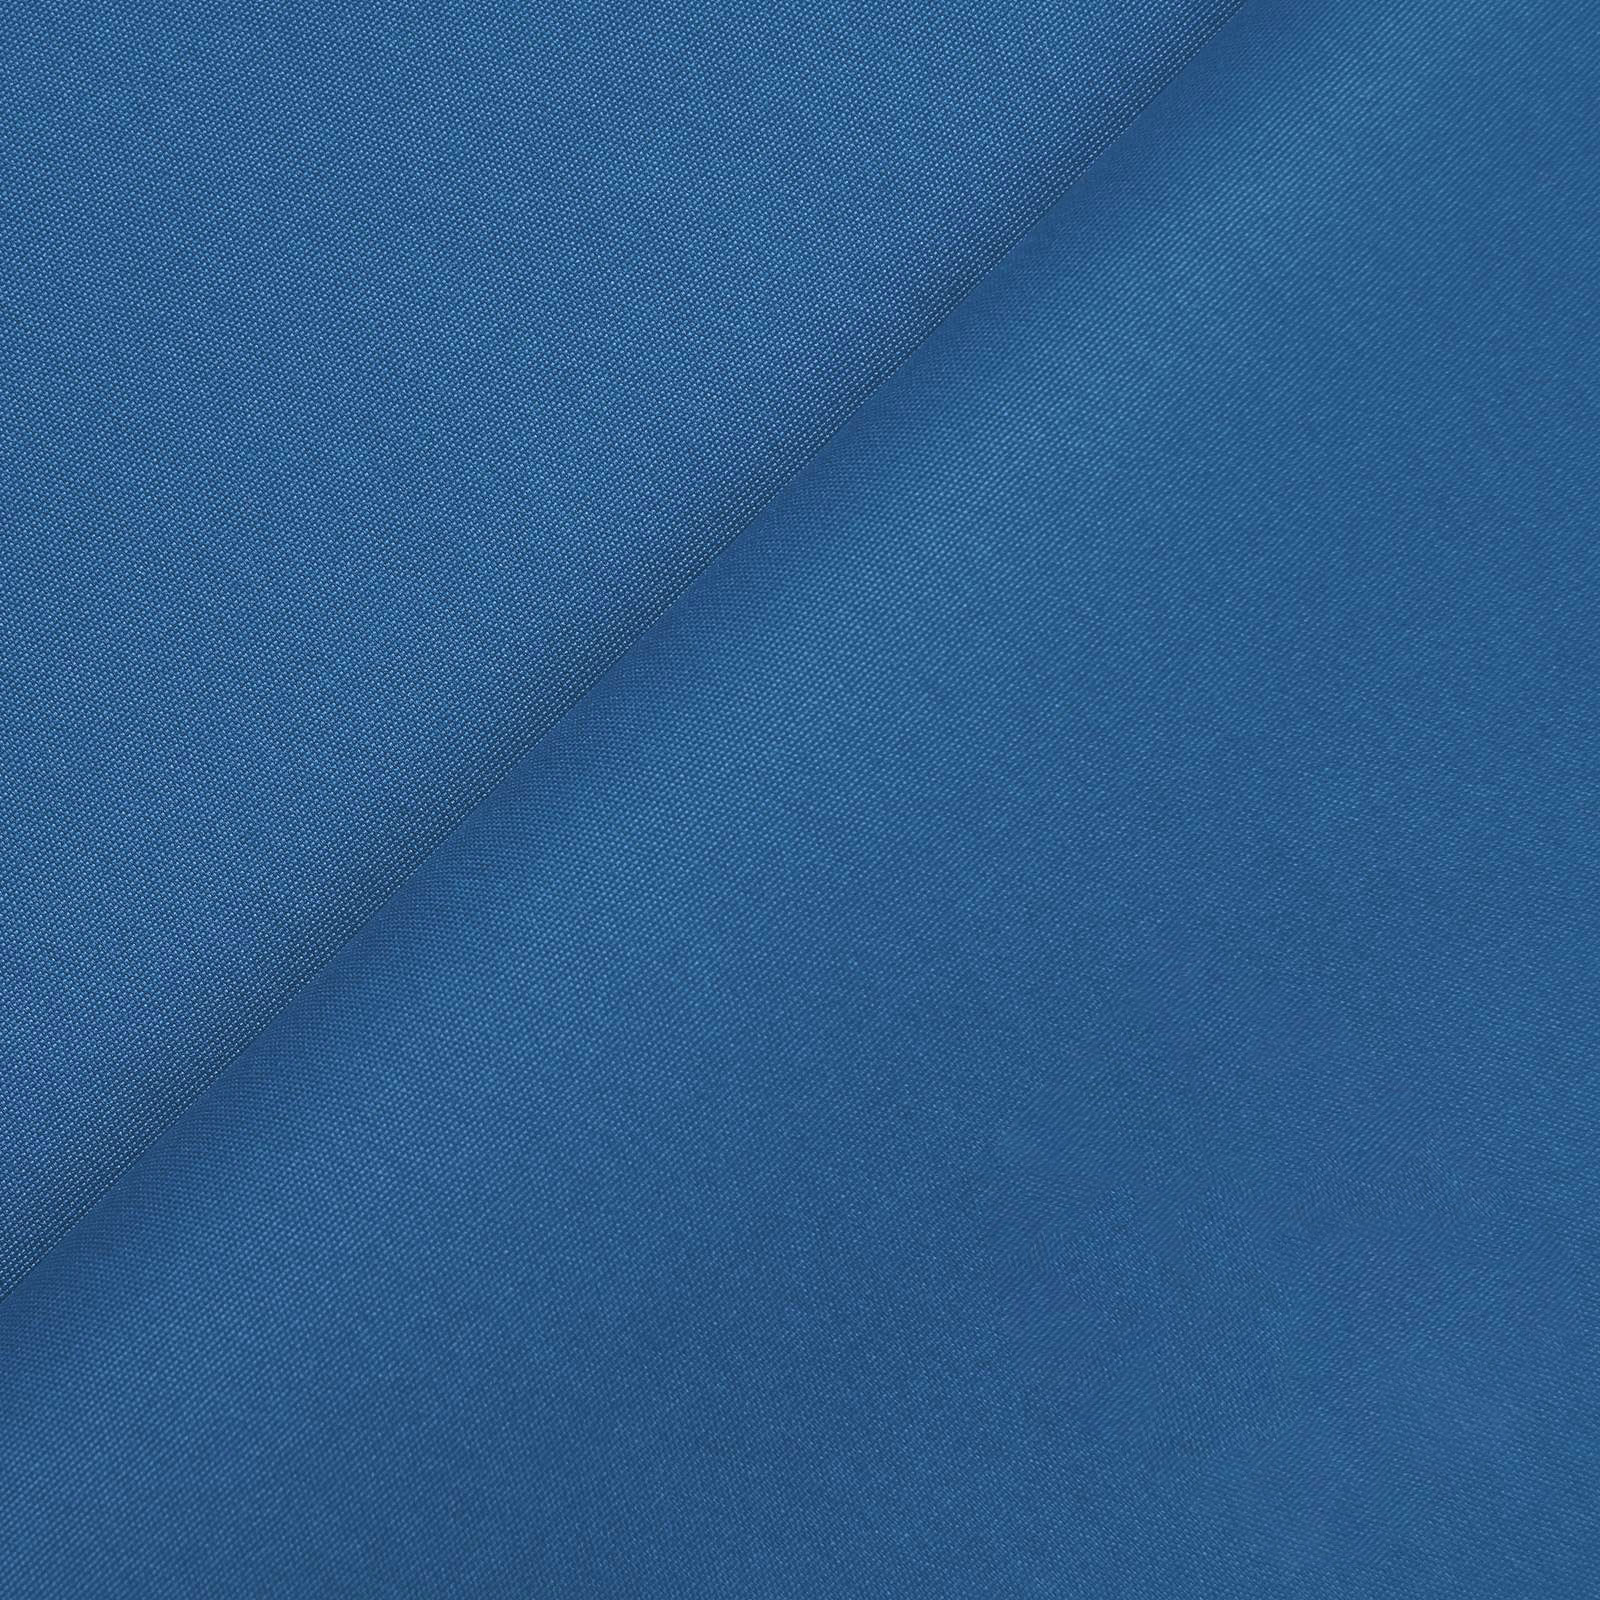 Peach - tissu fonctionnel avec imperméabilisation (bleu royal)